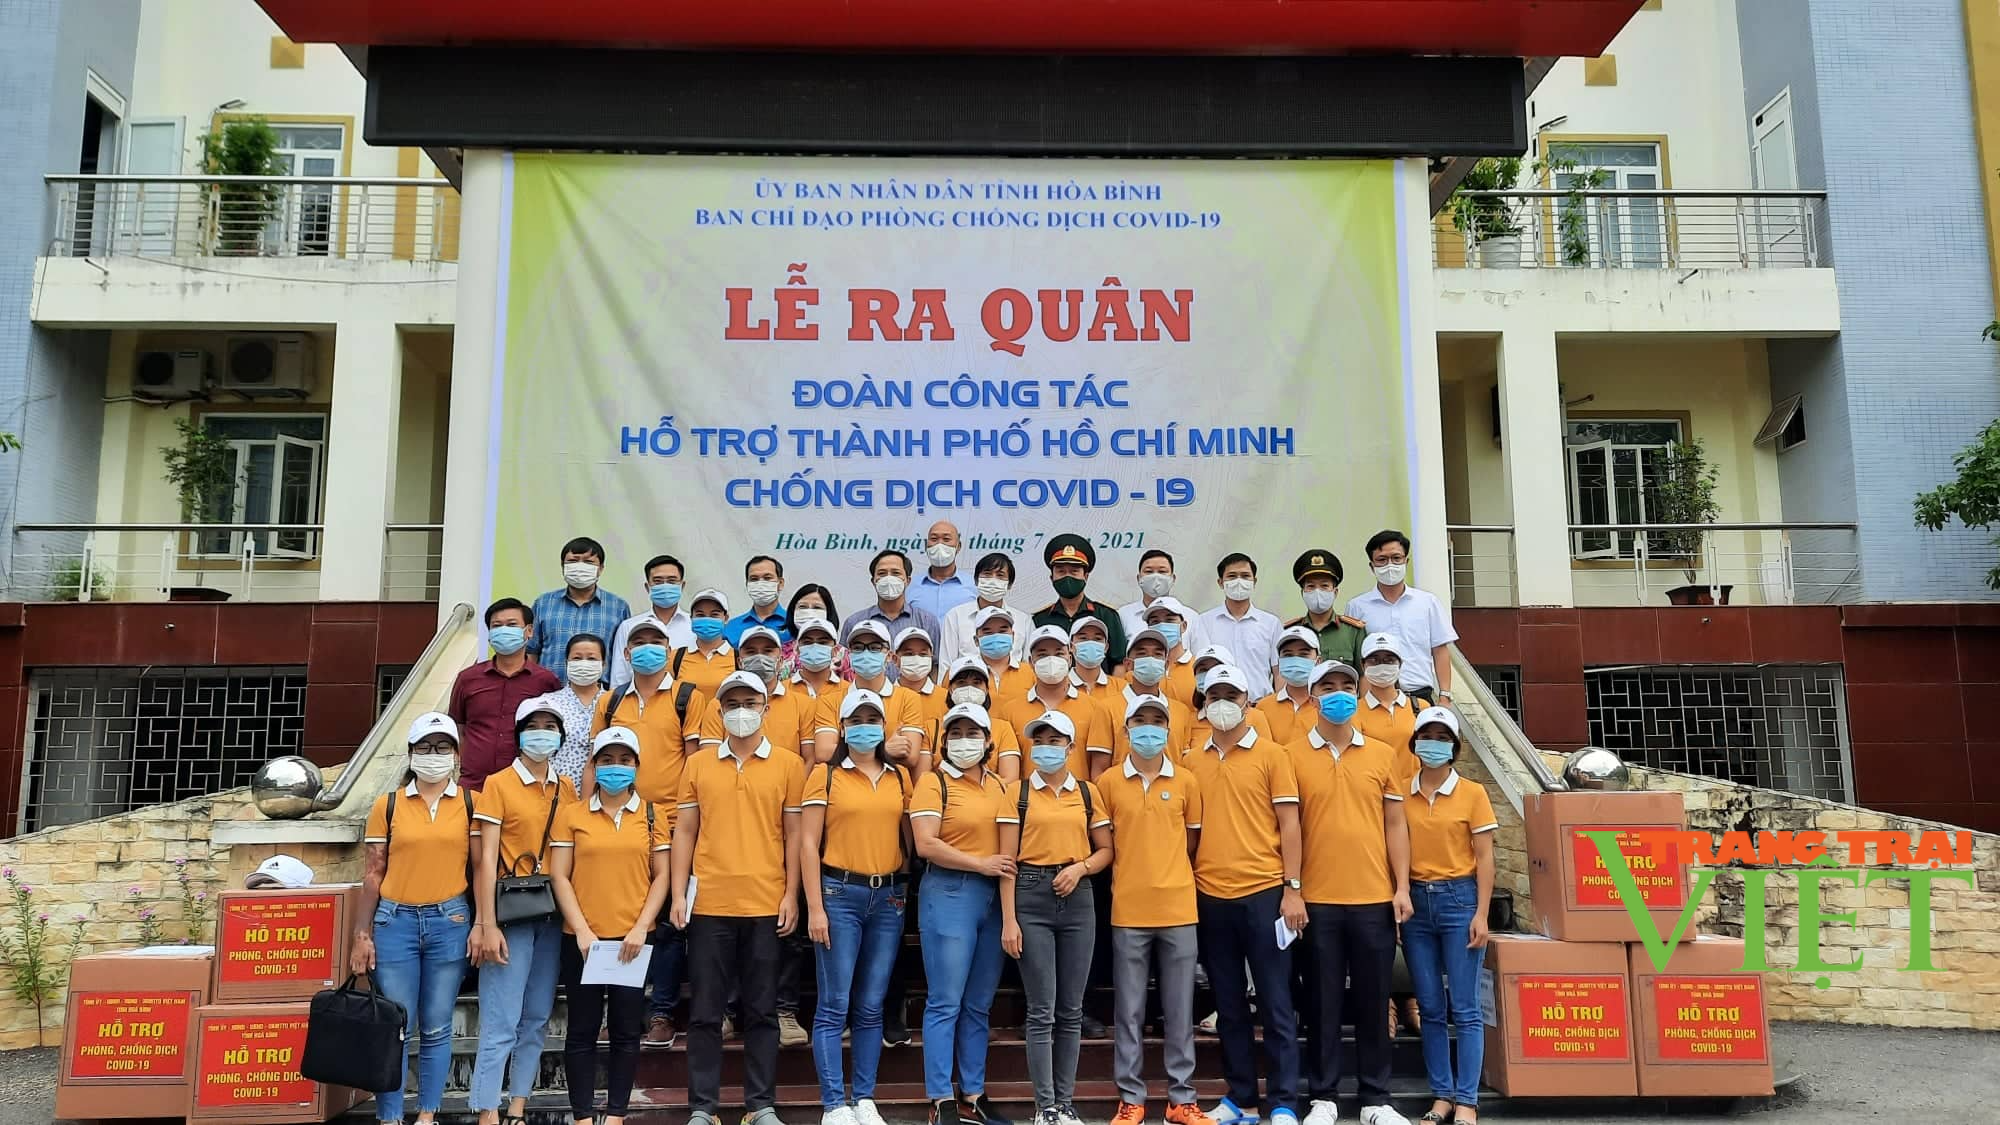 Hoà Bình: Cử 26 chiến sỹ áo trắng vào TP. Hồ Chí Minh tham gia chống dịch Covid-19 - Ảnh 1.